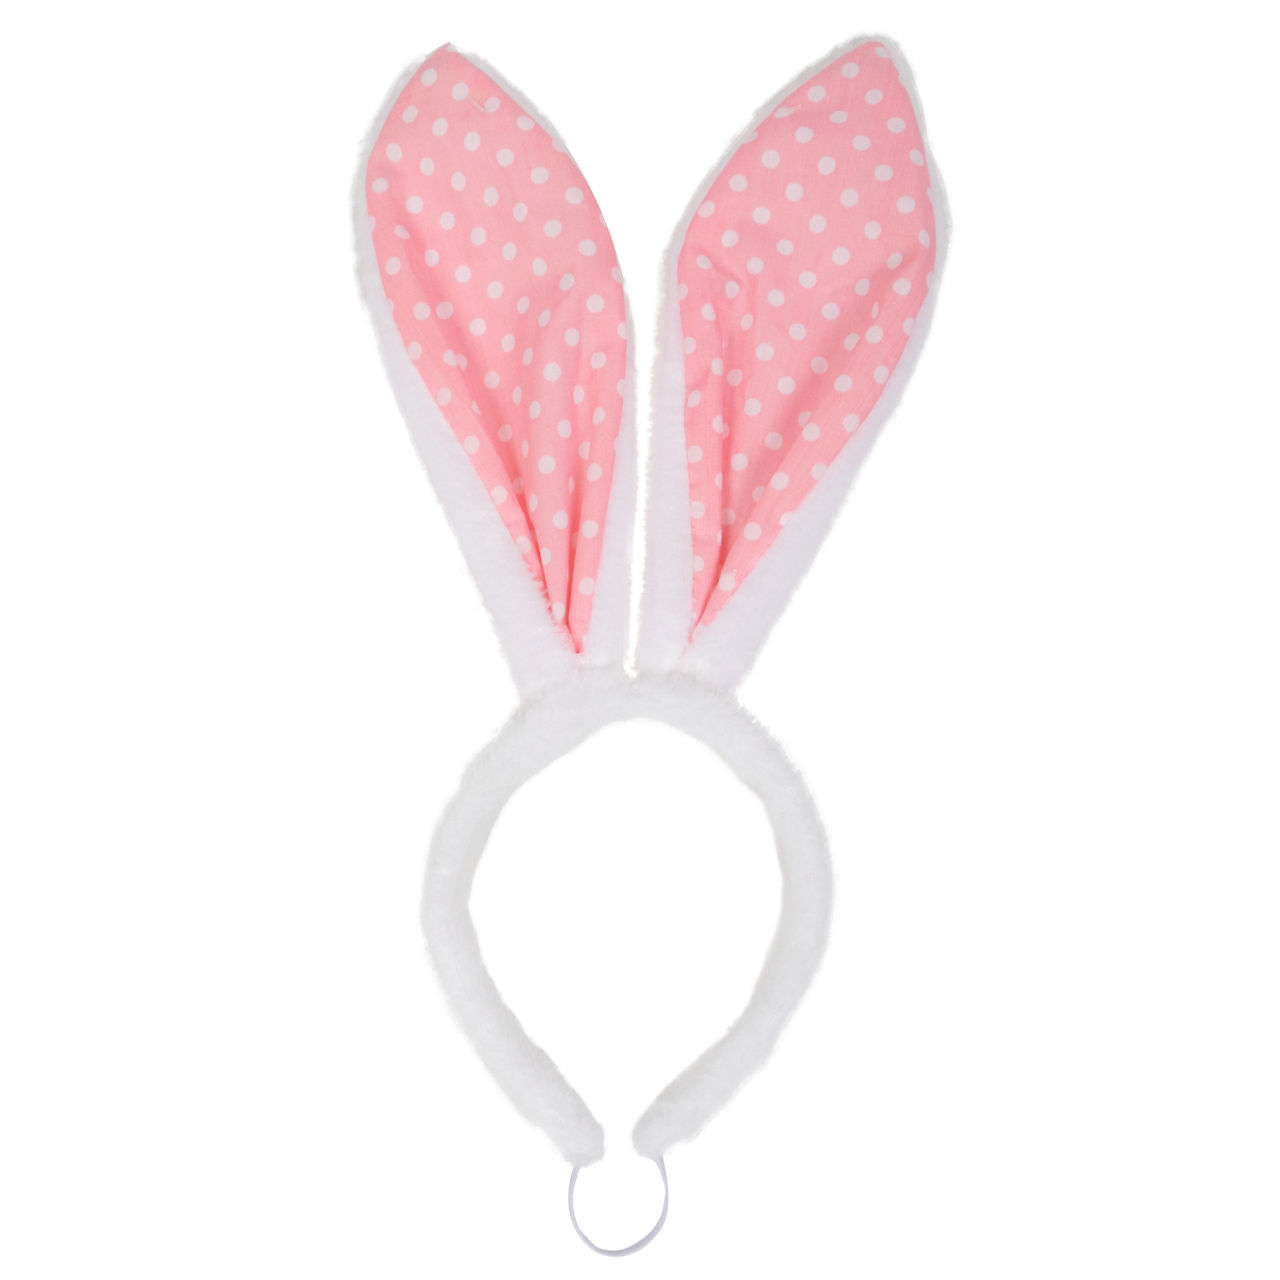 Pet Small/Medium White & Pink Polka Dot Fuzzy Bunny Ear Headband